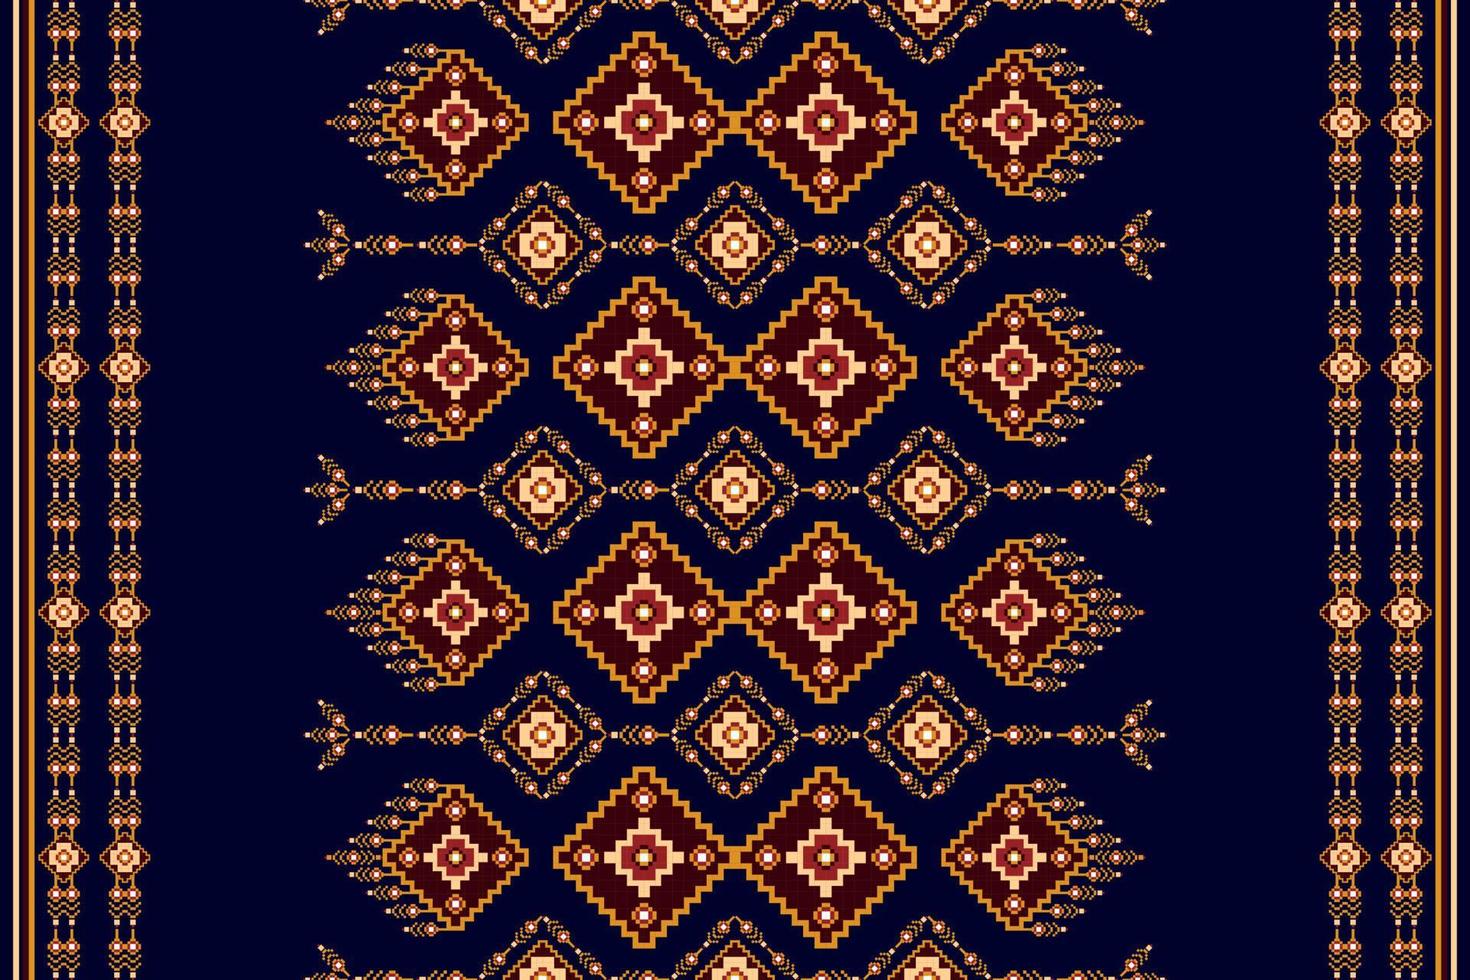 diseño de patrones sin fisuras étnicos ikat. alfombra de tela azteca boho mandalas decoración textil papel tapiz. tribal nativo motivo flor tradicional bordado vector ilustrado fondo